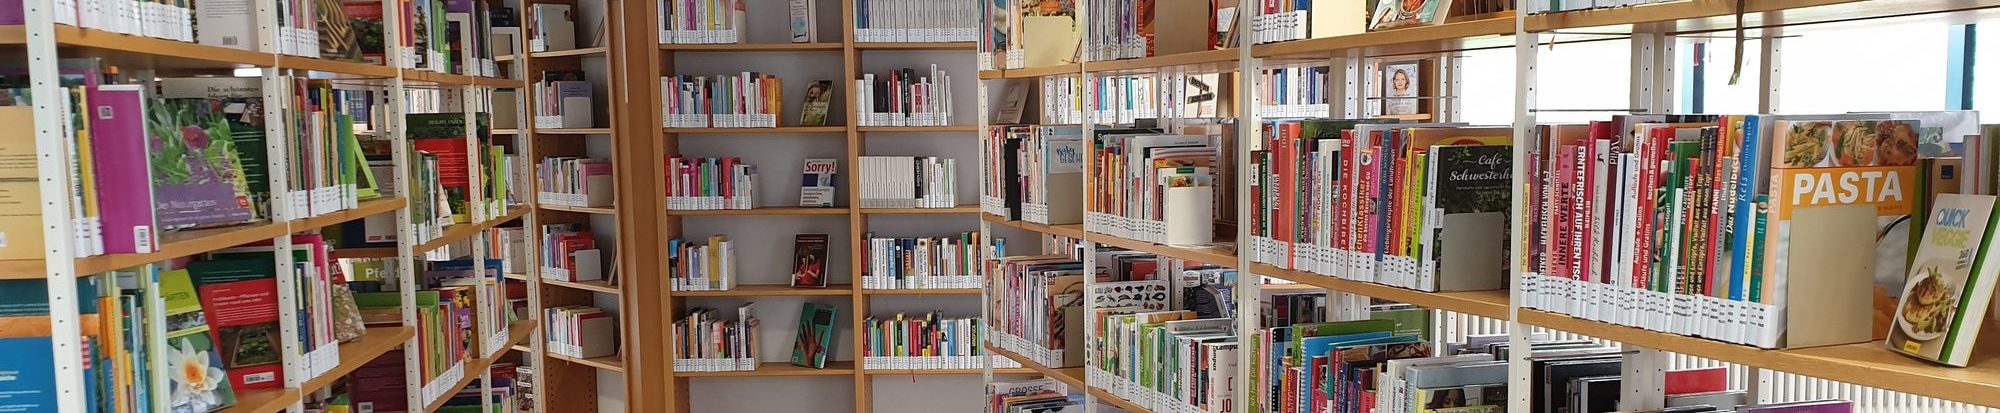 Sachbücher in der Stadtbibliothek Lebenstedt